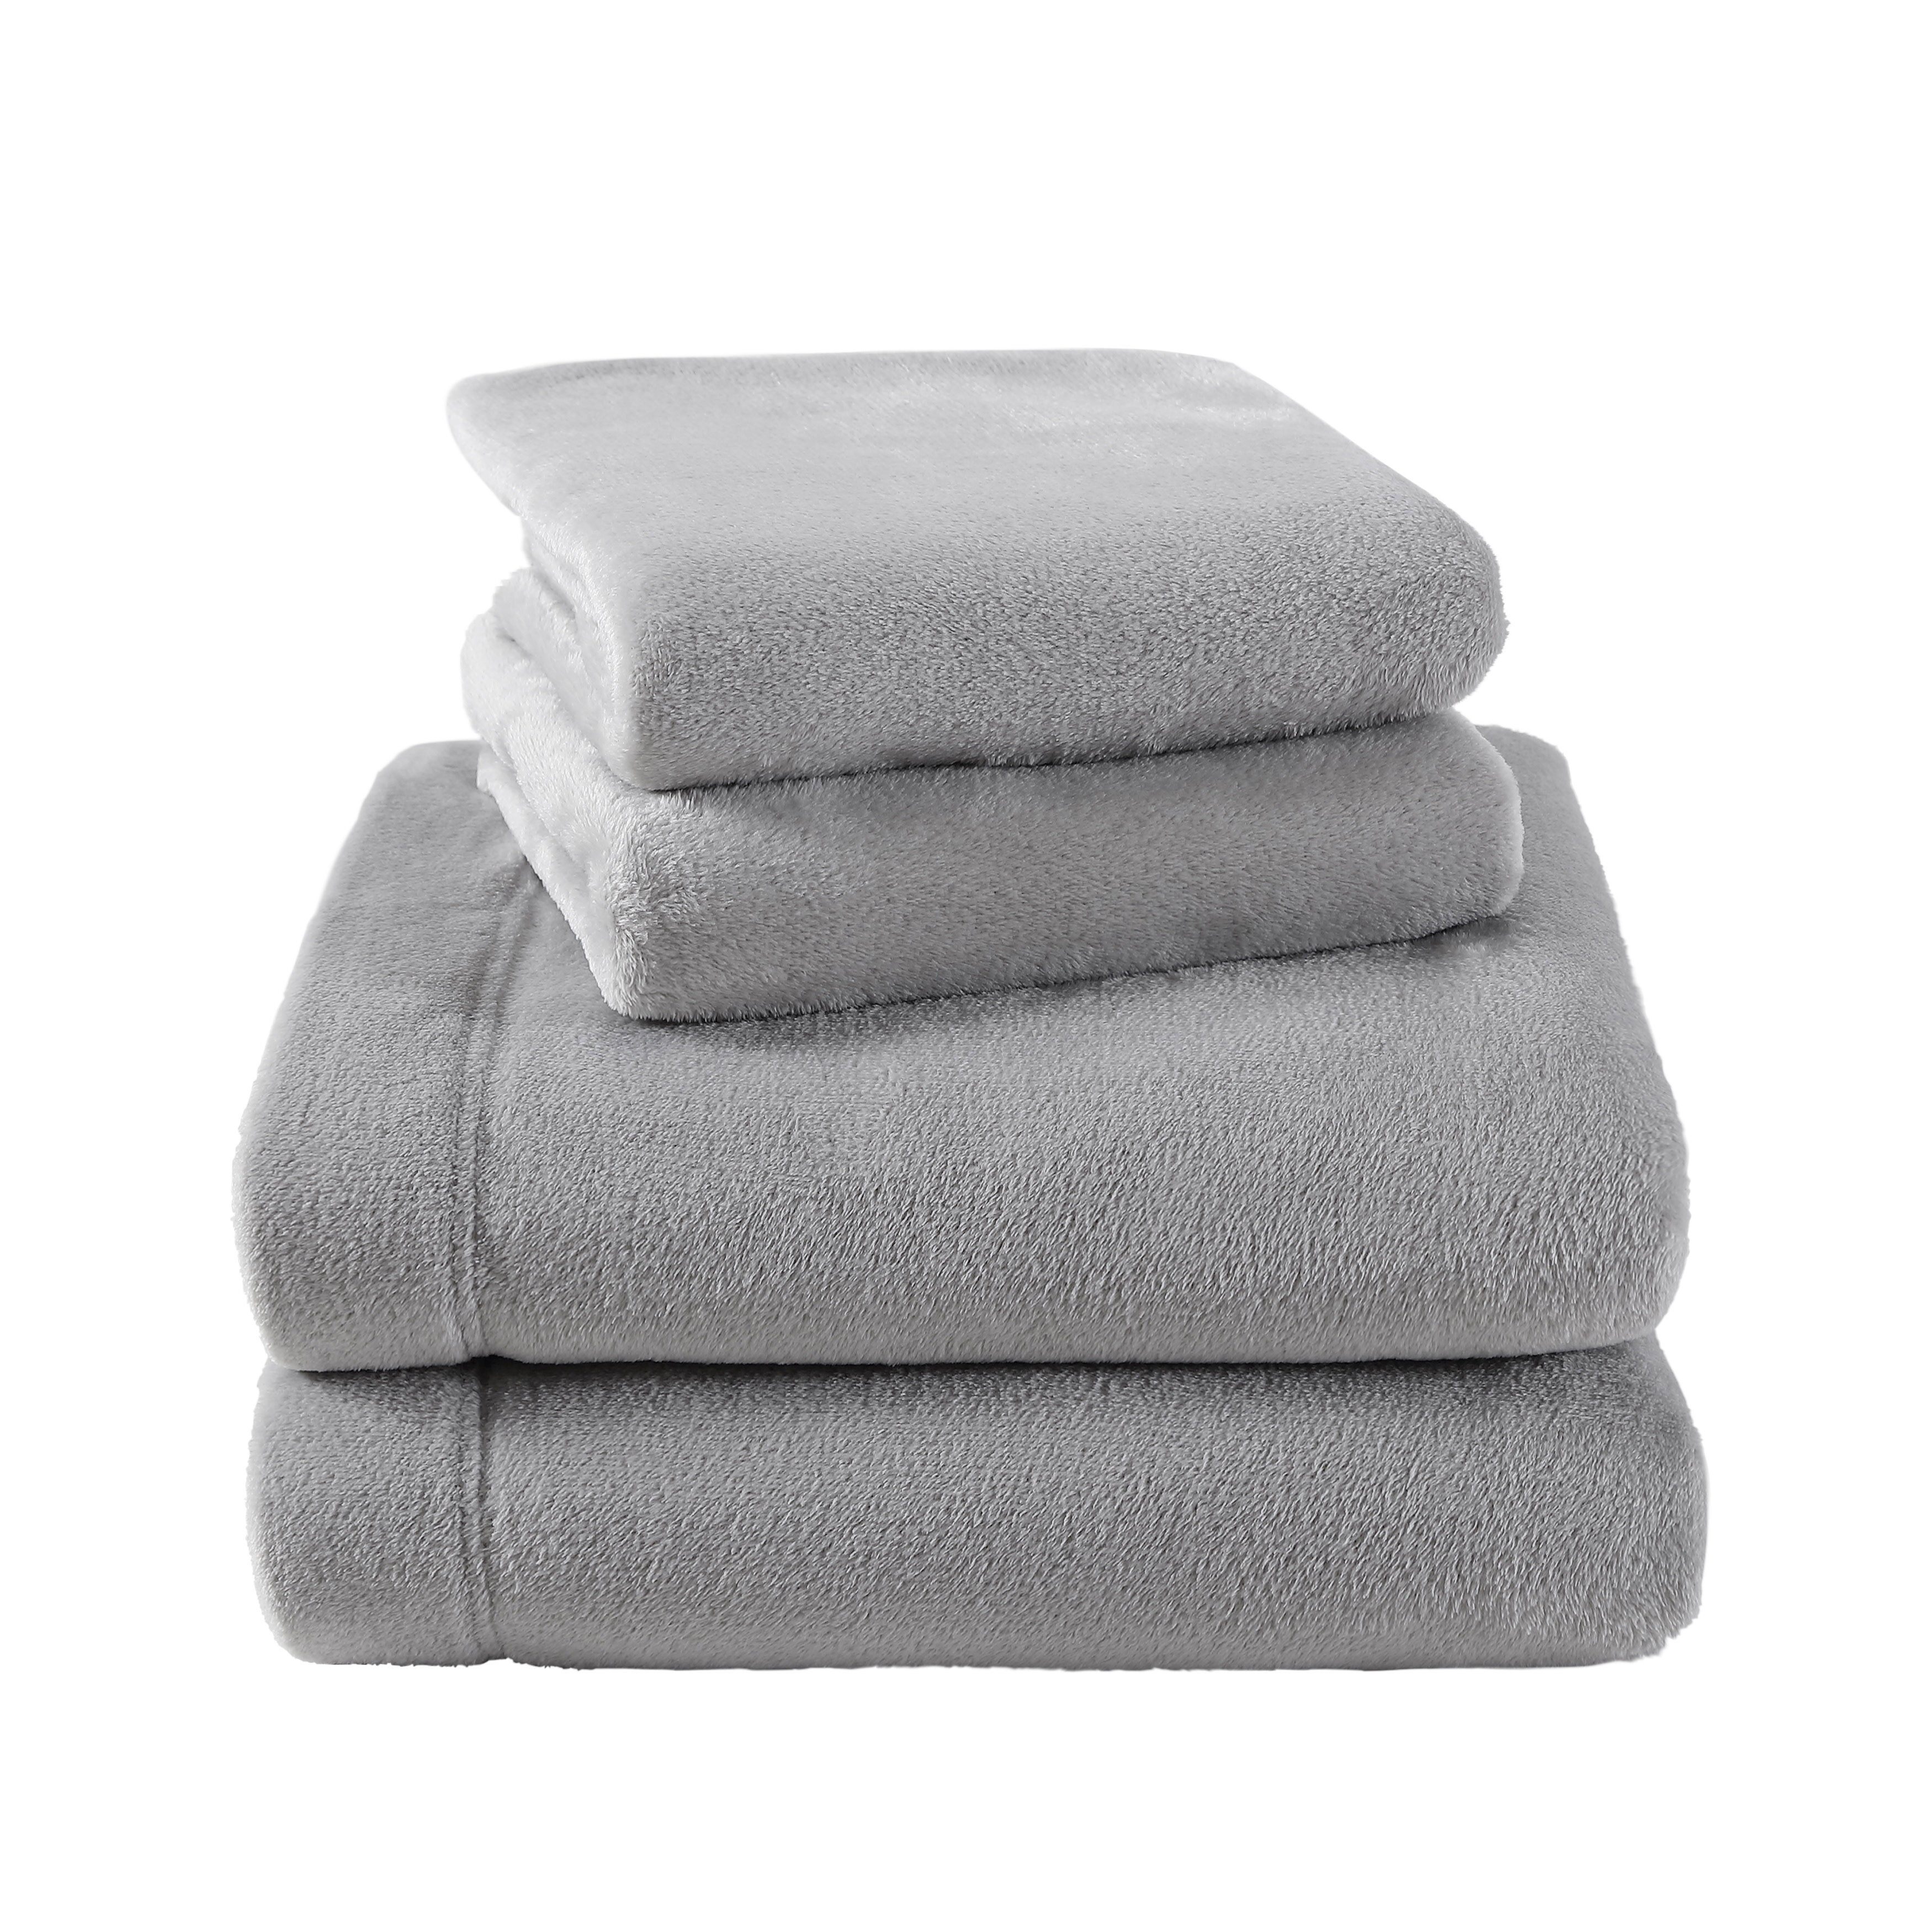 https://assets.wfcdn.com/im/49592650/compr-r85/1630/163048914/laura-ashley-soft-cozy-medium-weight-plush-fleece-sheets-pillowcase-sets.jpg